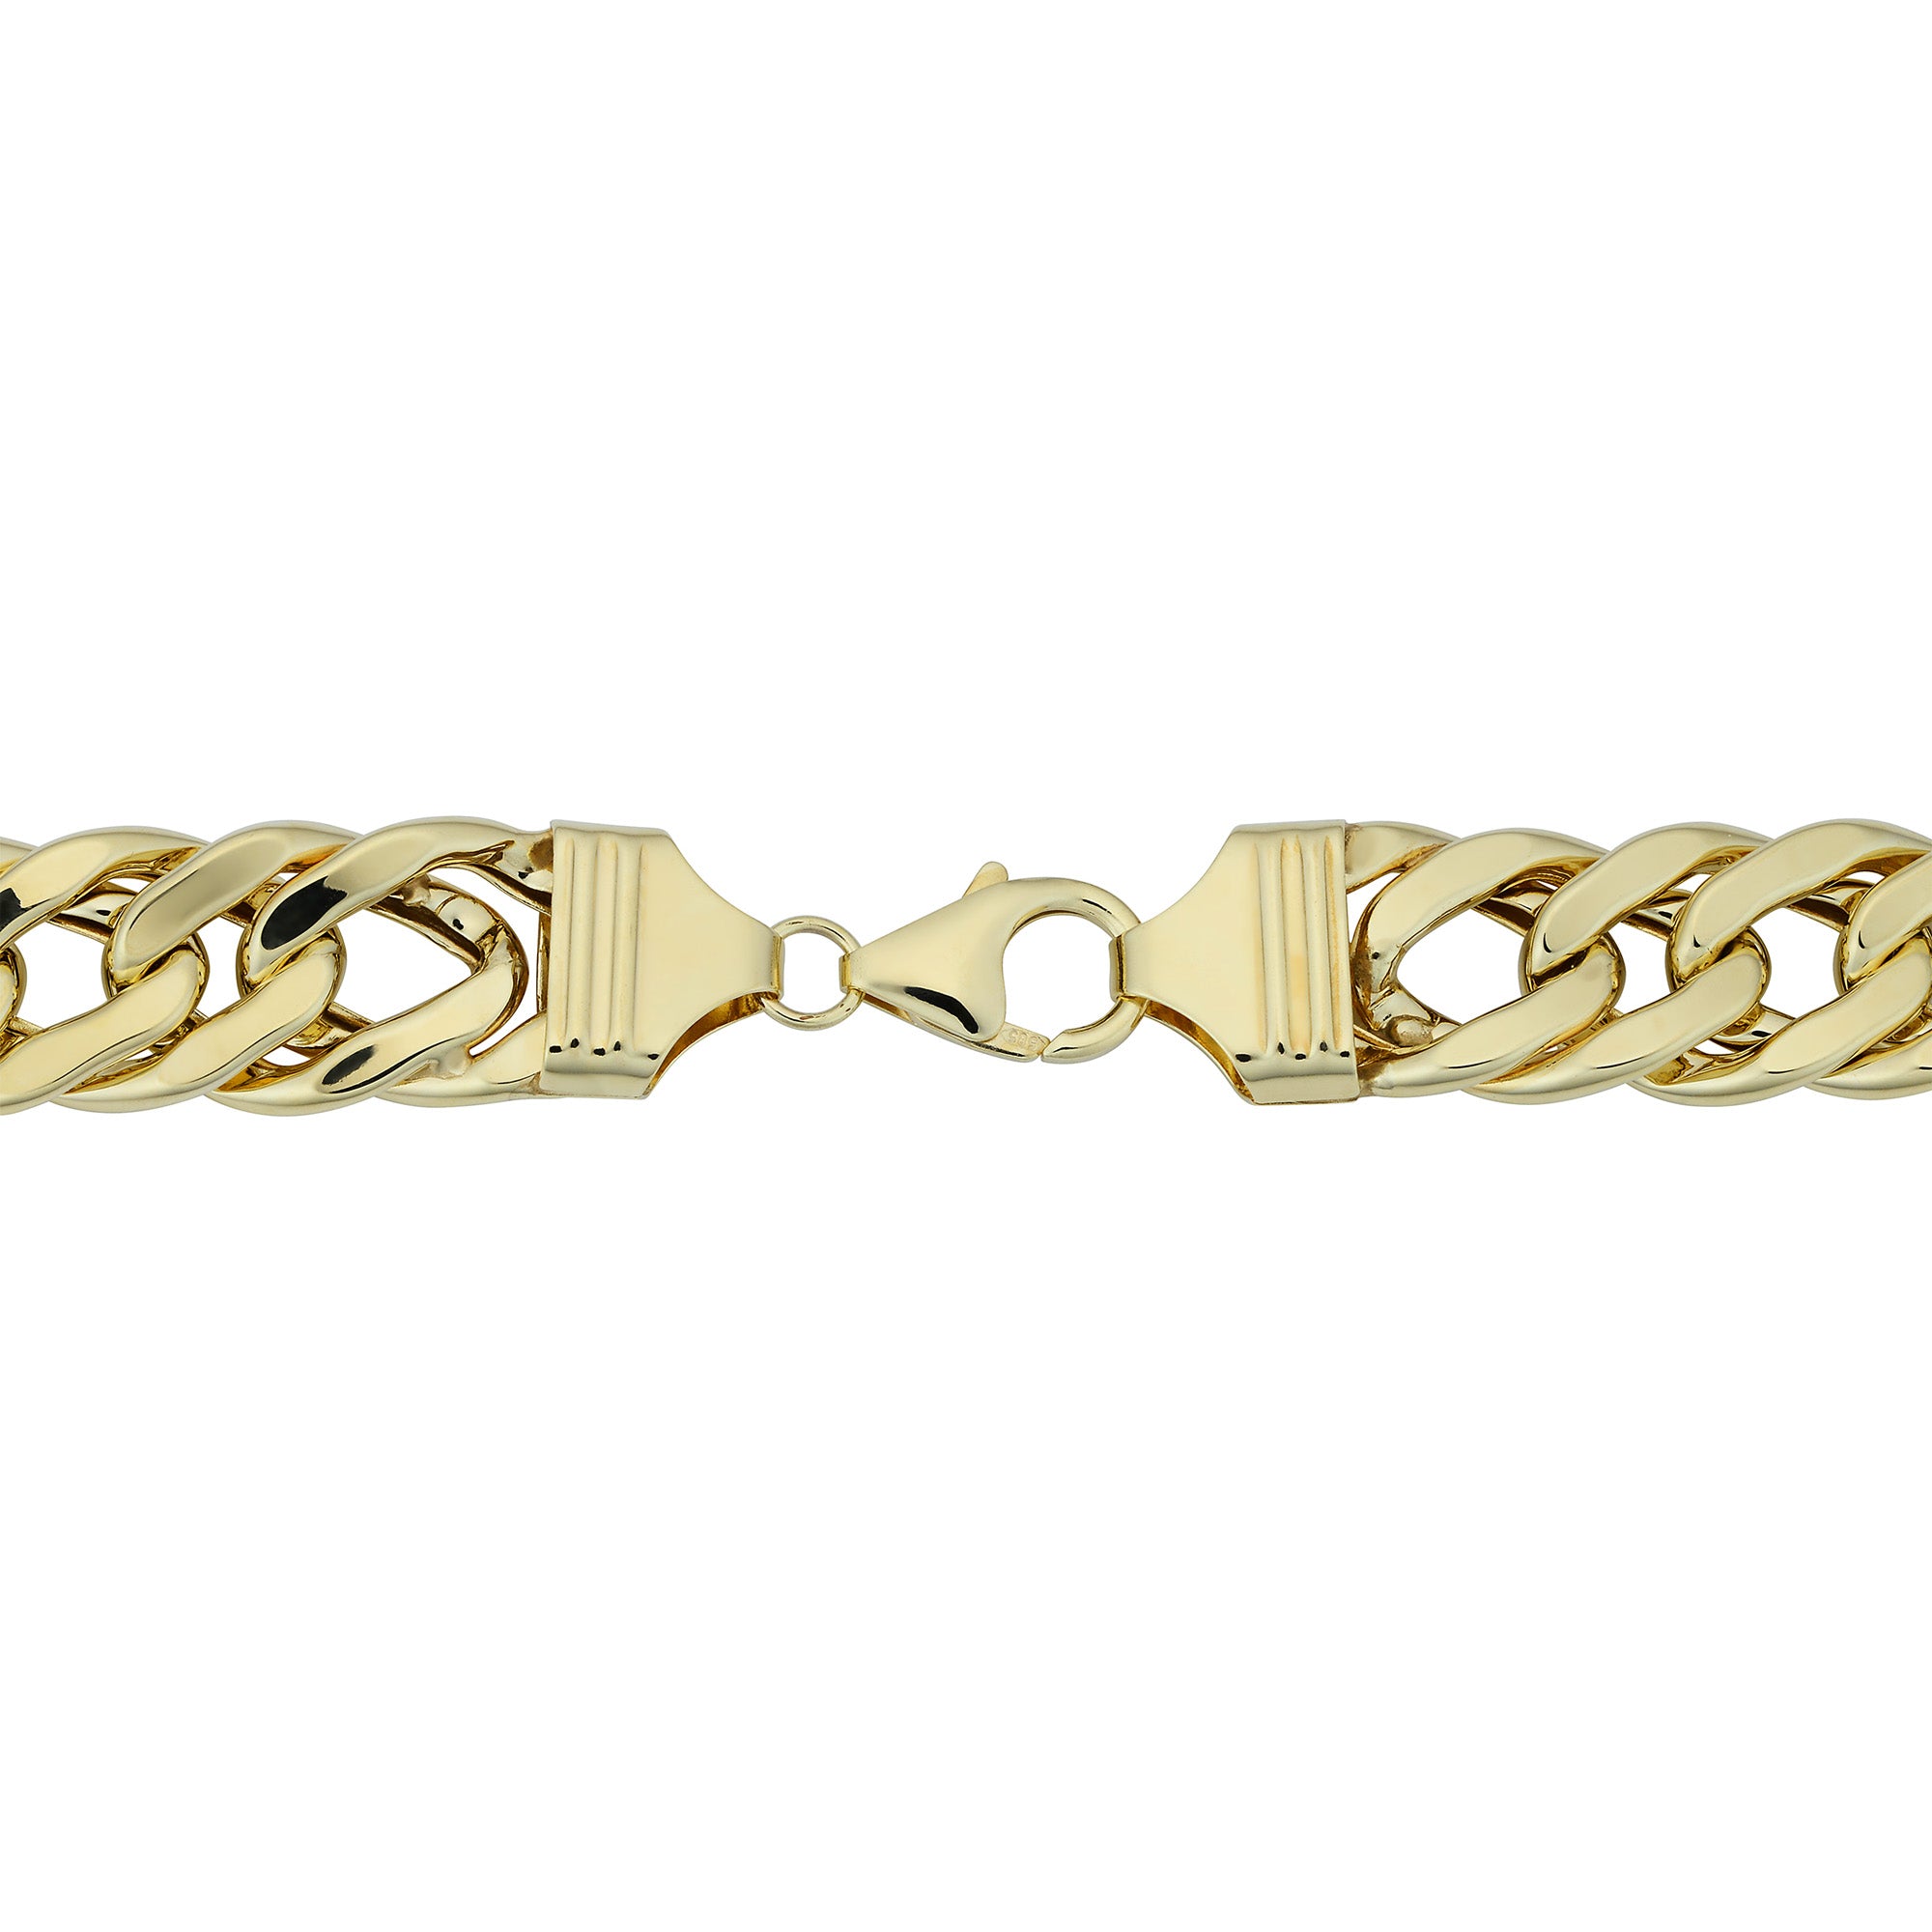 Halvsolid kantstenskædearmbånd i 14 karat gult guld, 7,5" fine designersmykker til mænd og kvinder